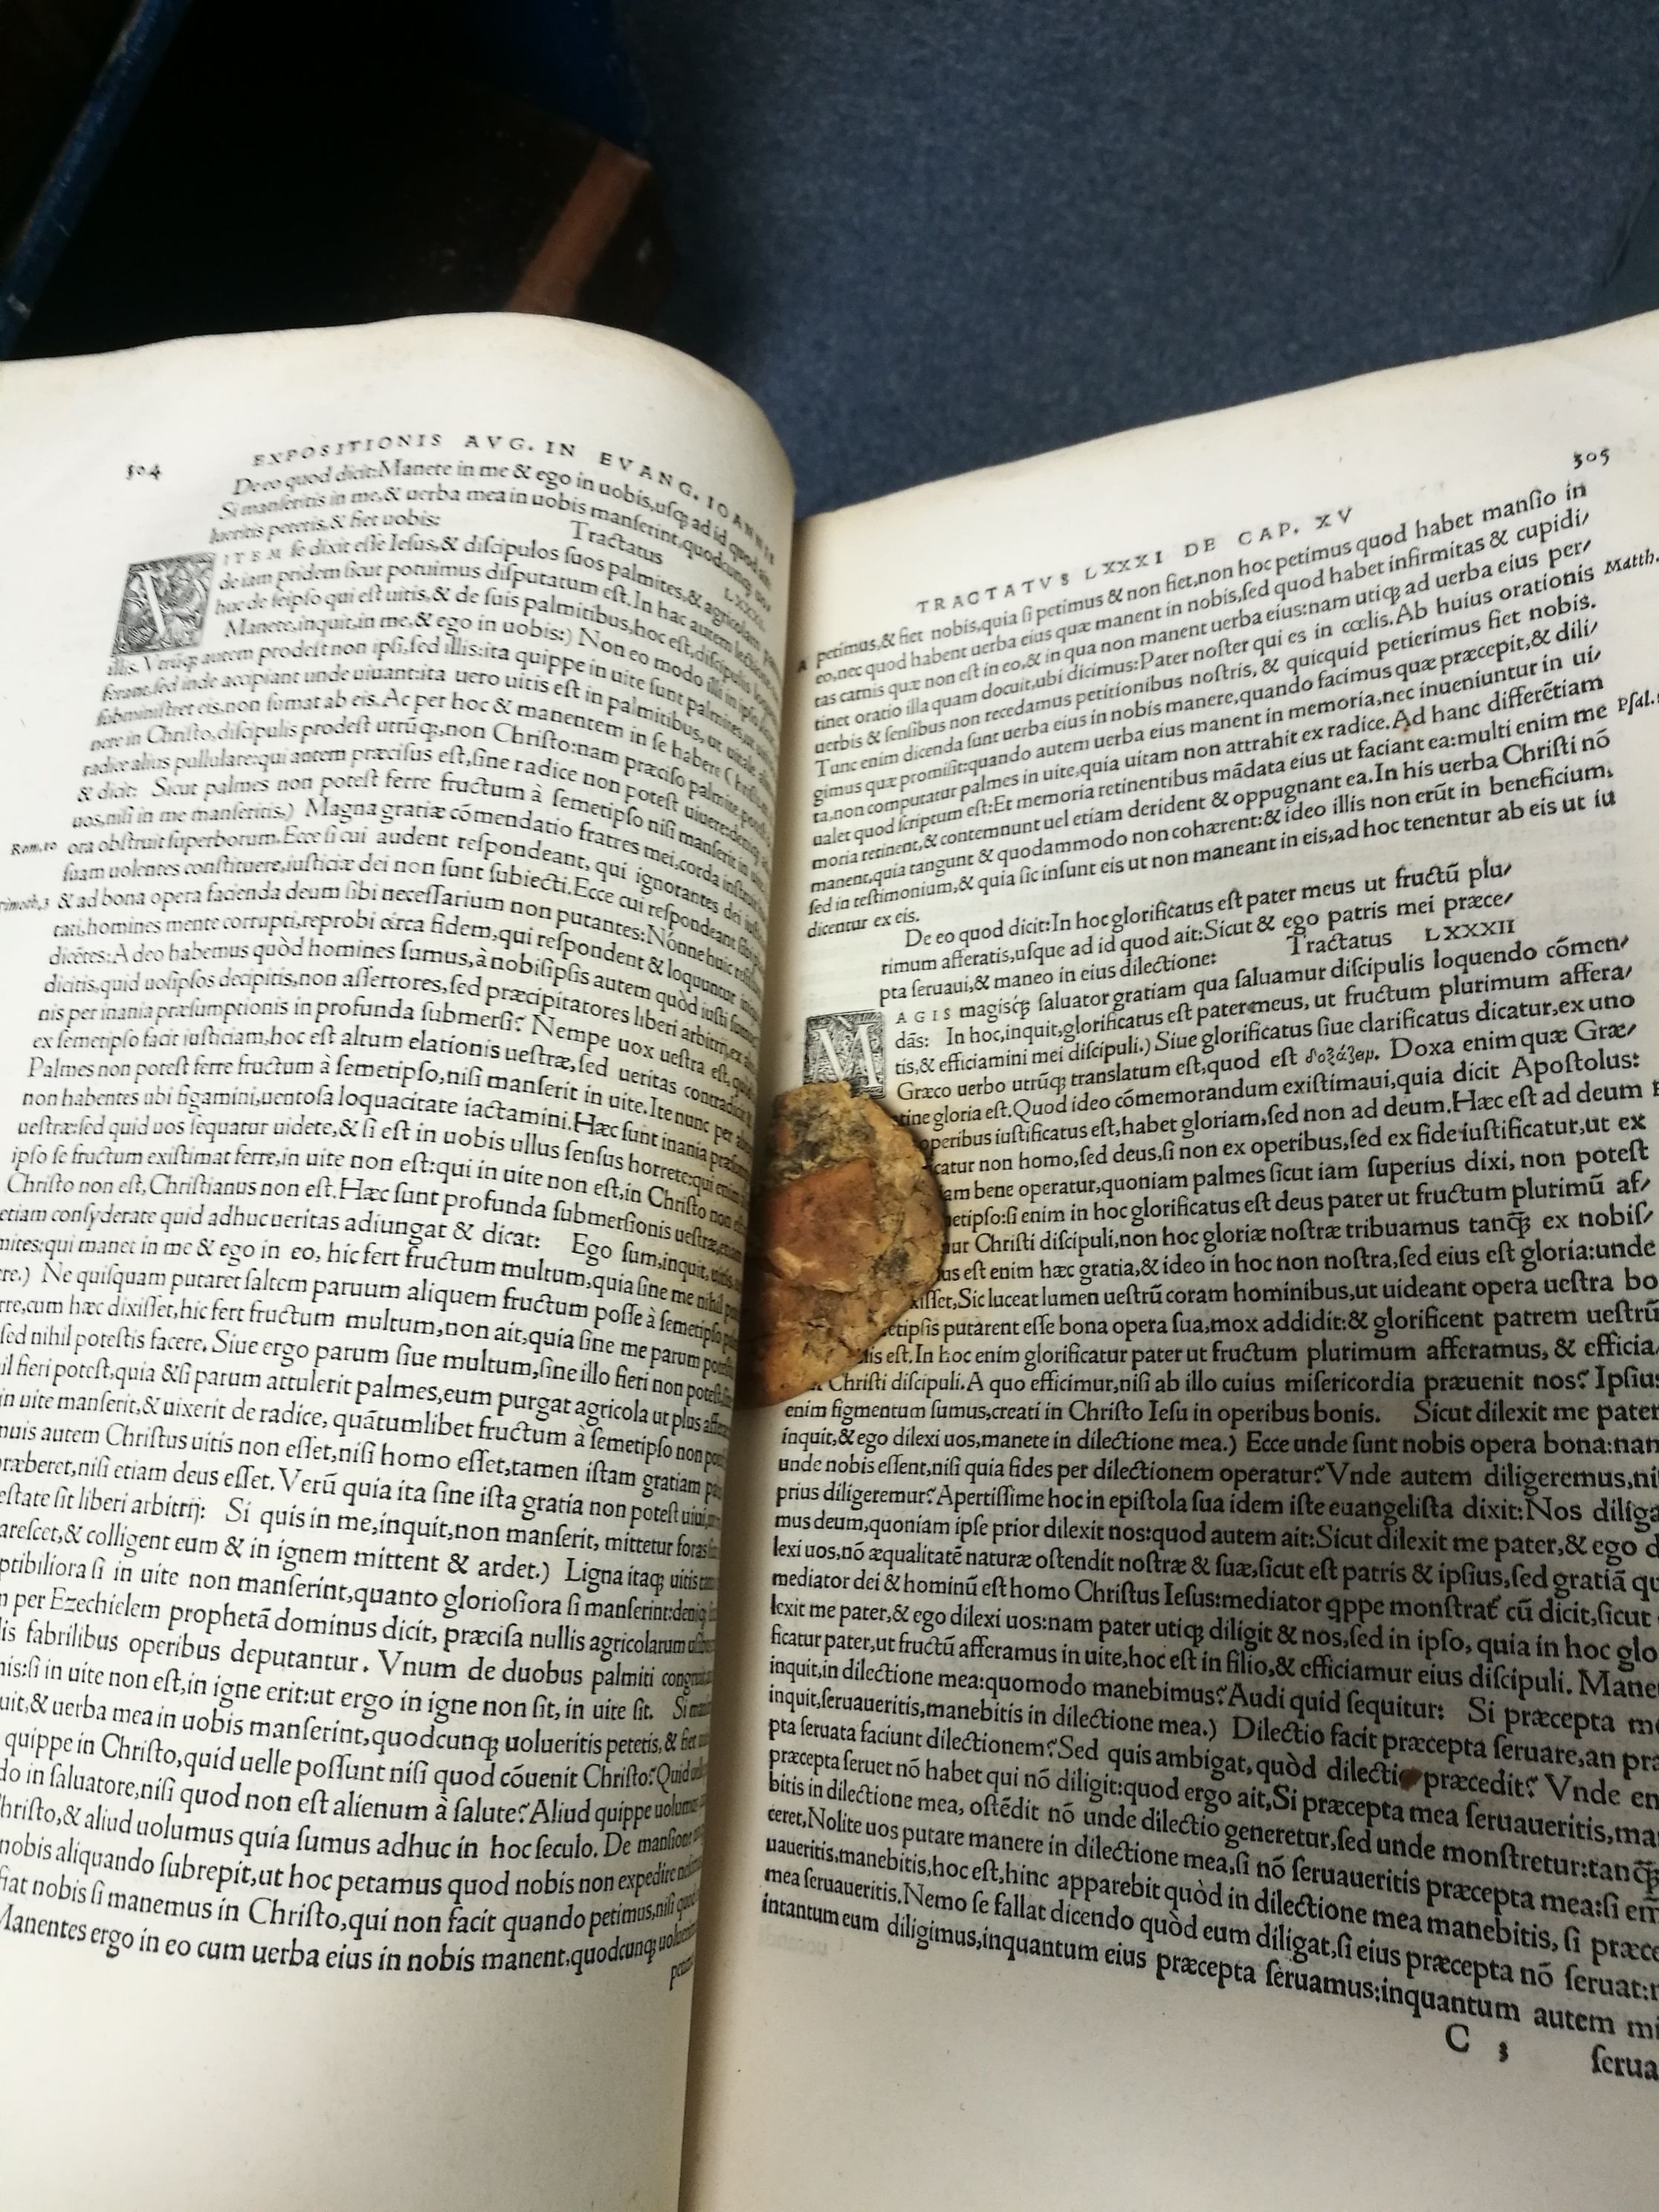 Half-Eaten Cookie Found Inside A 16th Century Book